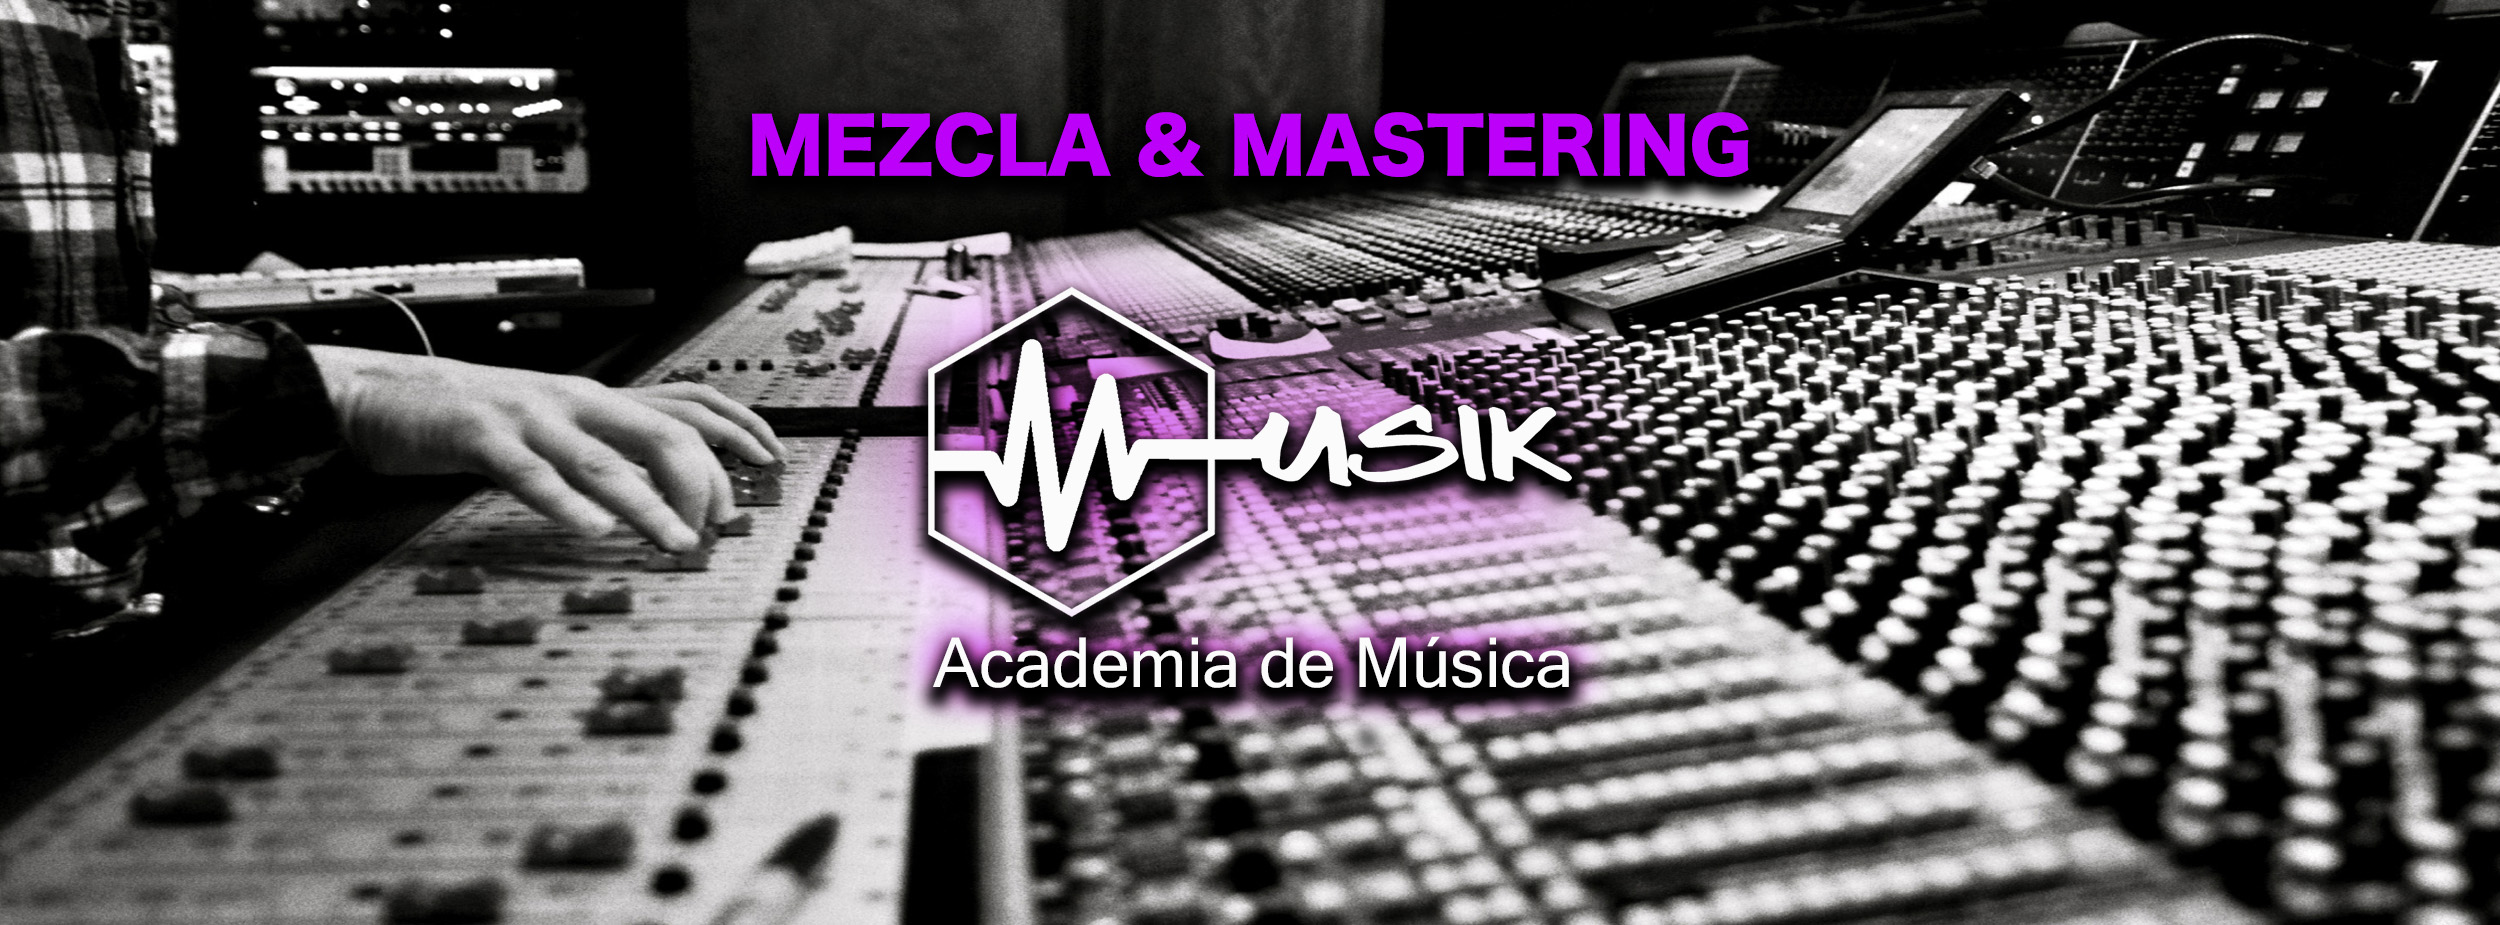 Musik 011 - Mezcla y Mastering